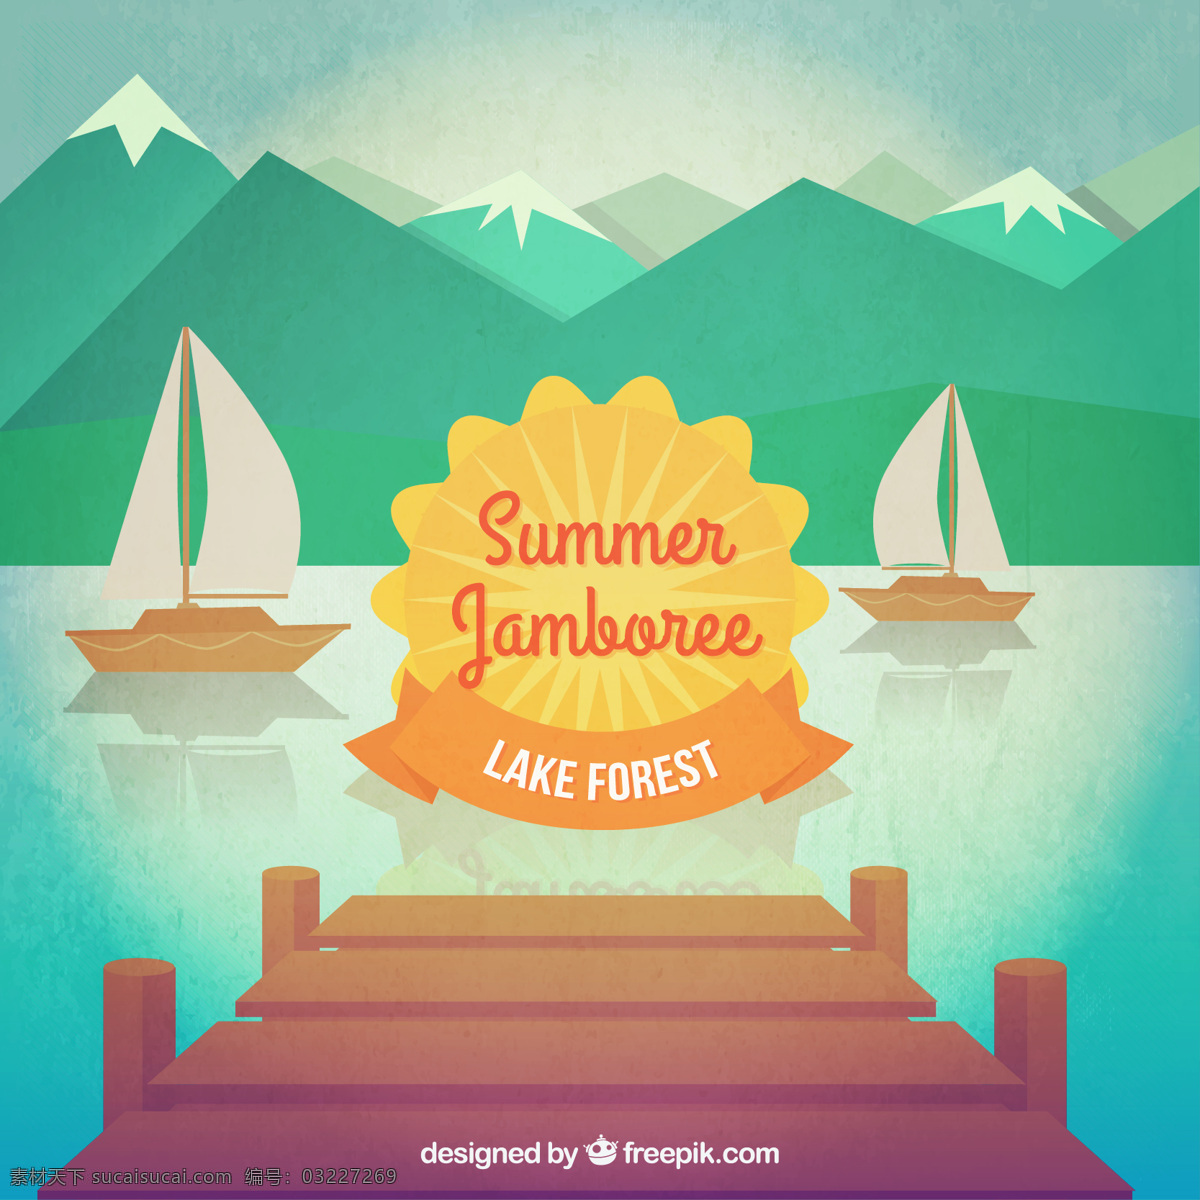 夏日狂欢 海报 晚会 夏天 自然 山 林 湖 党的海报 夏日聚会 夏季狂欢 青色 天蓝色